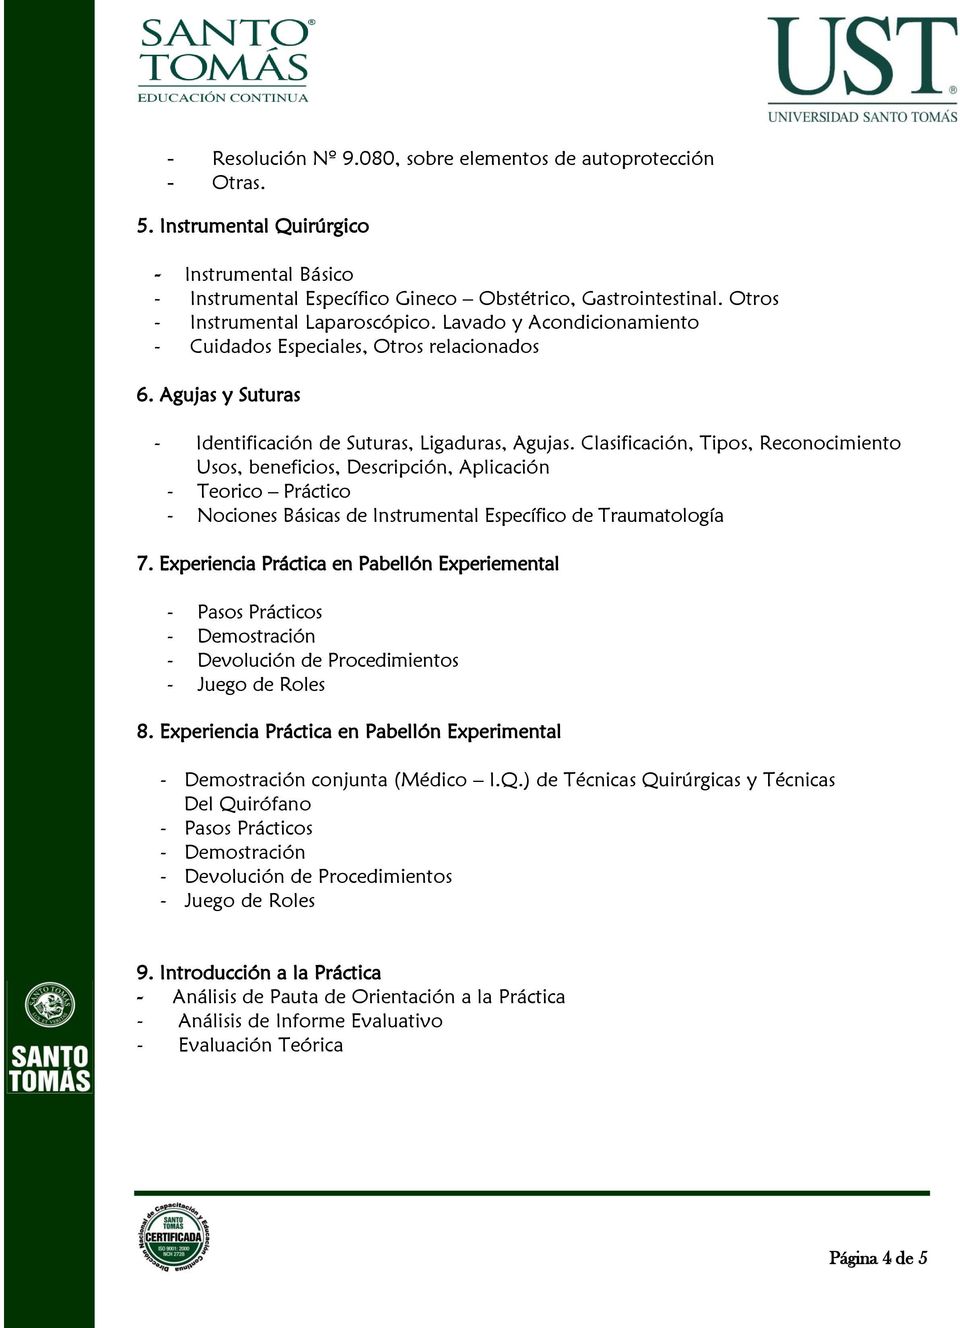 Clasificación, Tipos, Reconocimiento Usos, beneficios, Descripción, Aplicación - Teorico Práctico - Nociones Básicas de Instrumental Específico de Traumatología 7.